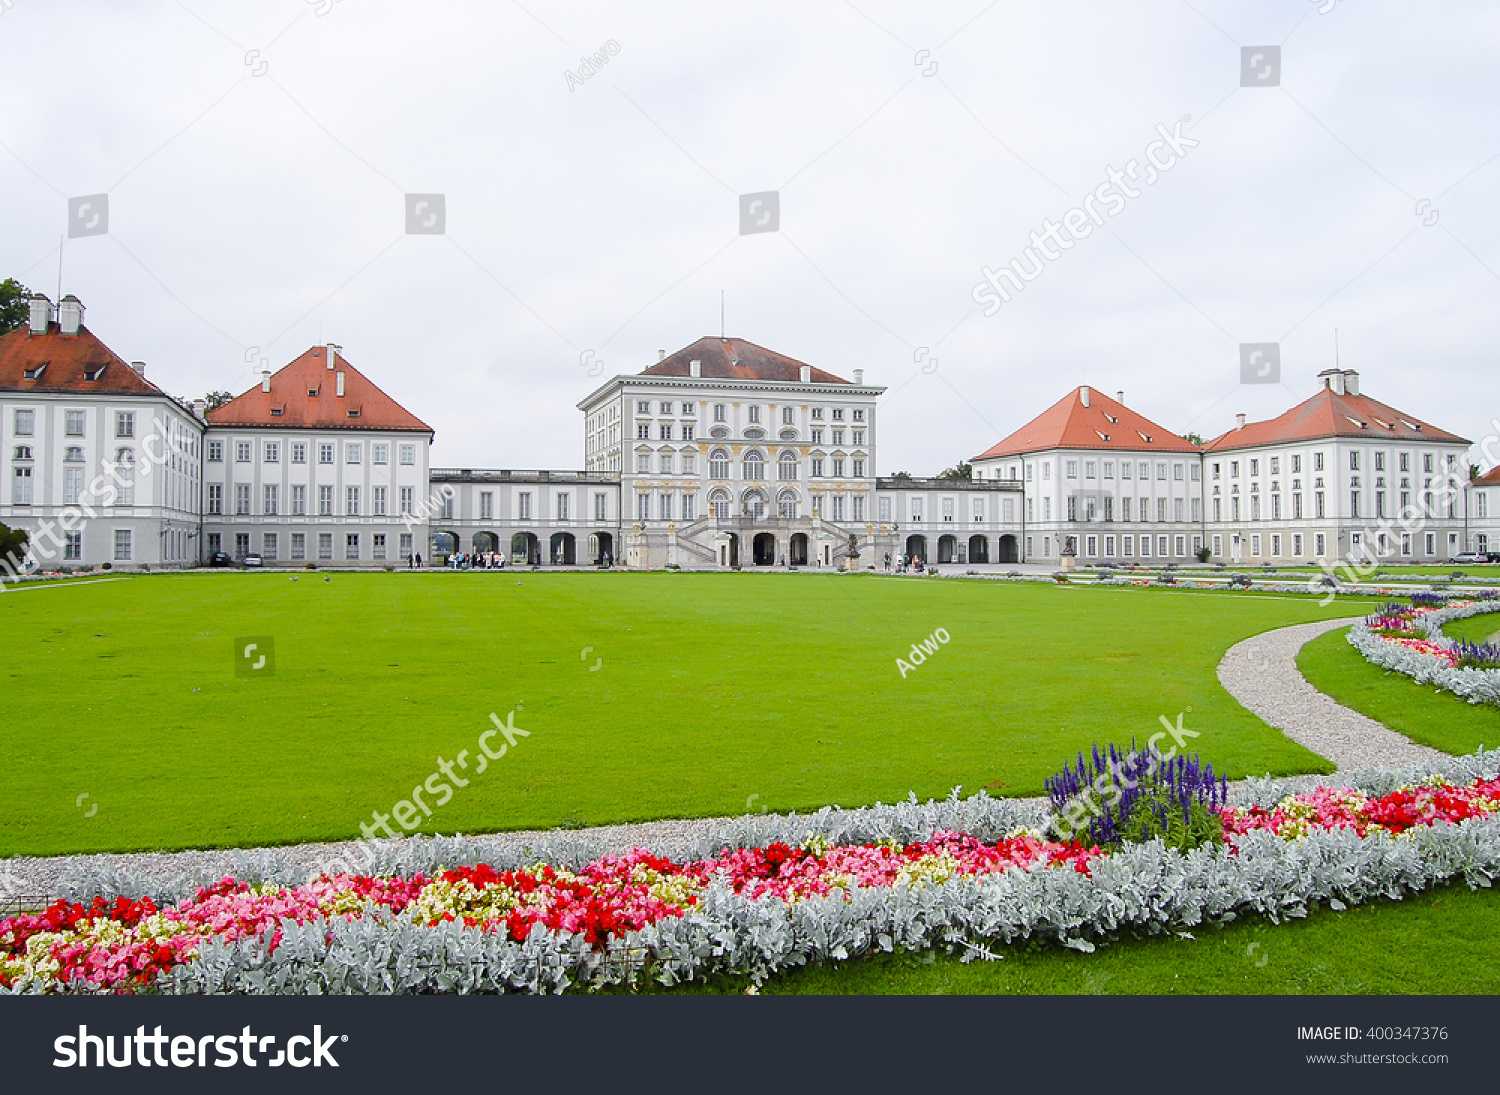 Дворец нимфенбург (мюнхен) - фото, описание, адрес, часы работы